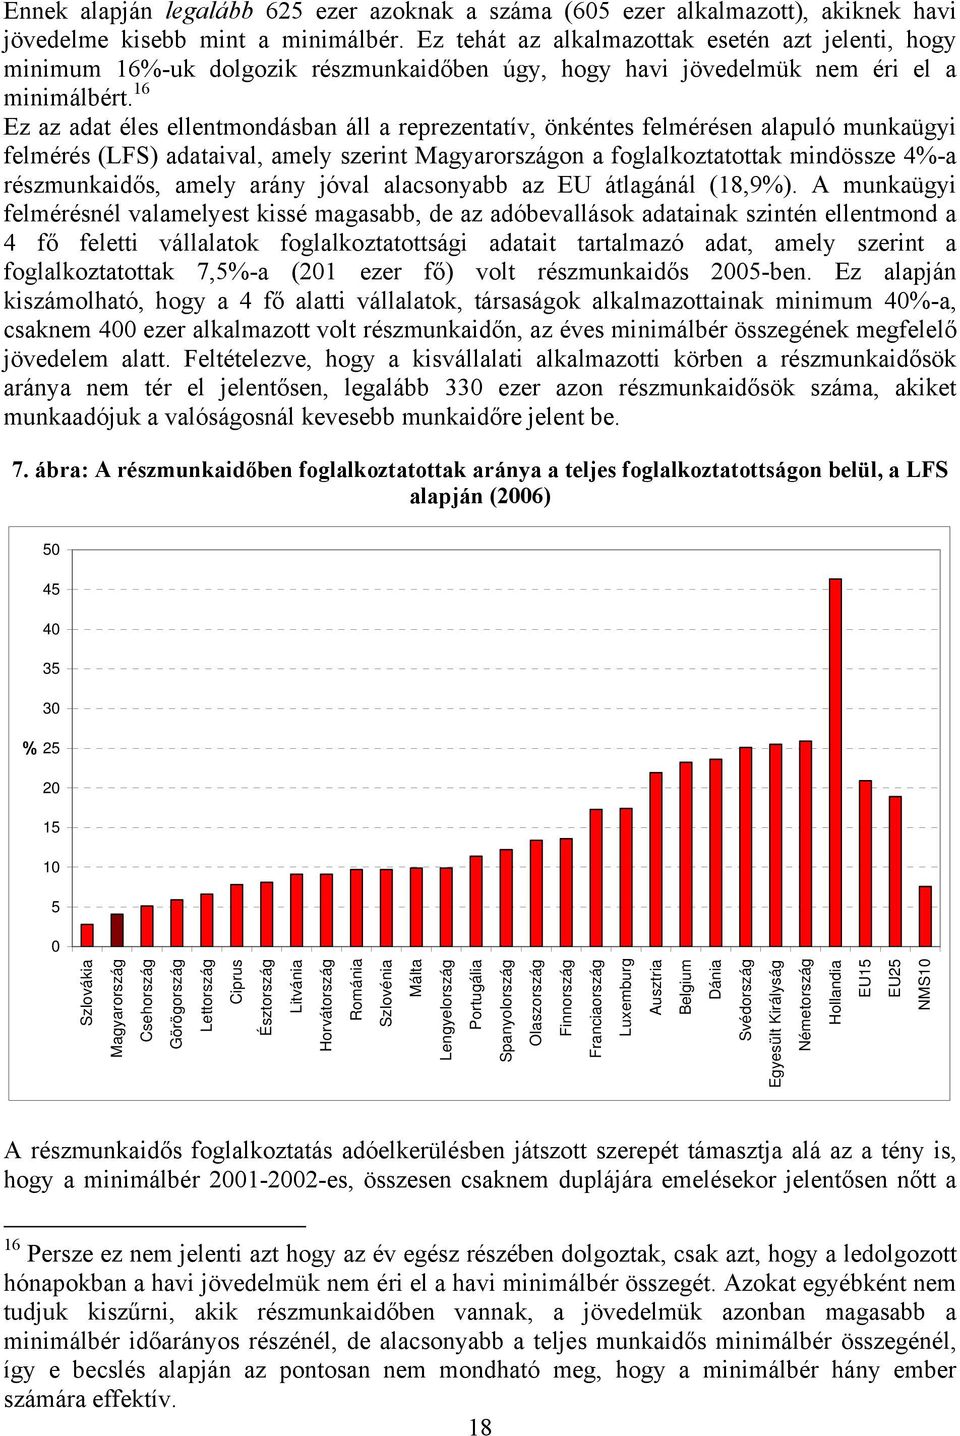 16 Ez az adat éles ellentmondásban áll a reprezentatív, önkéntes felmérésen alapuló munkaügyi felmérés (LFS) adataival, amely szerint Magyarországon a foglalkoztatottak mindössze 4%-a részmunkaidős,